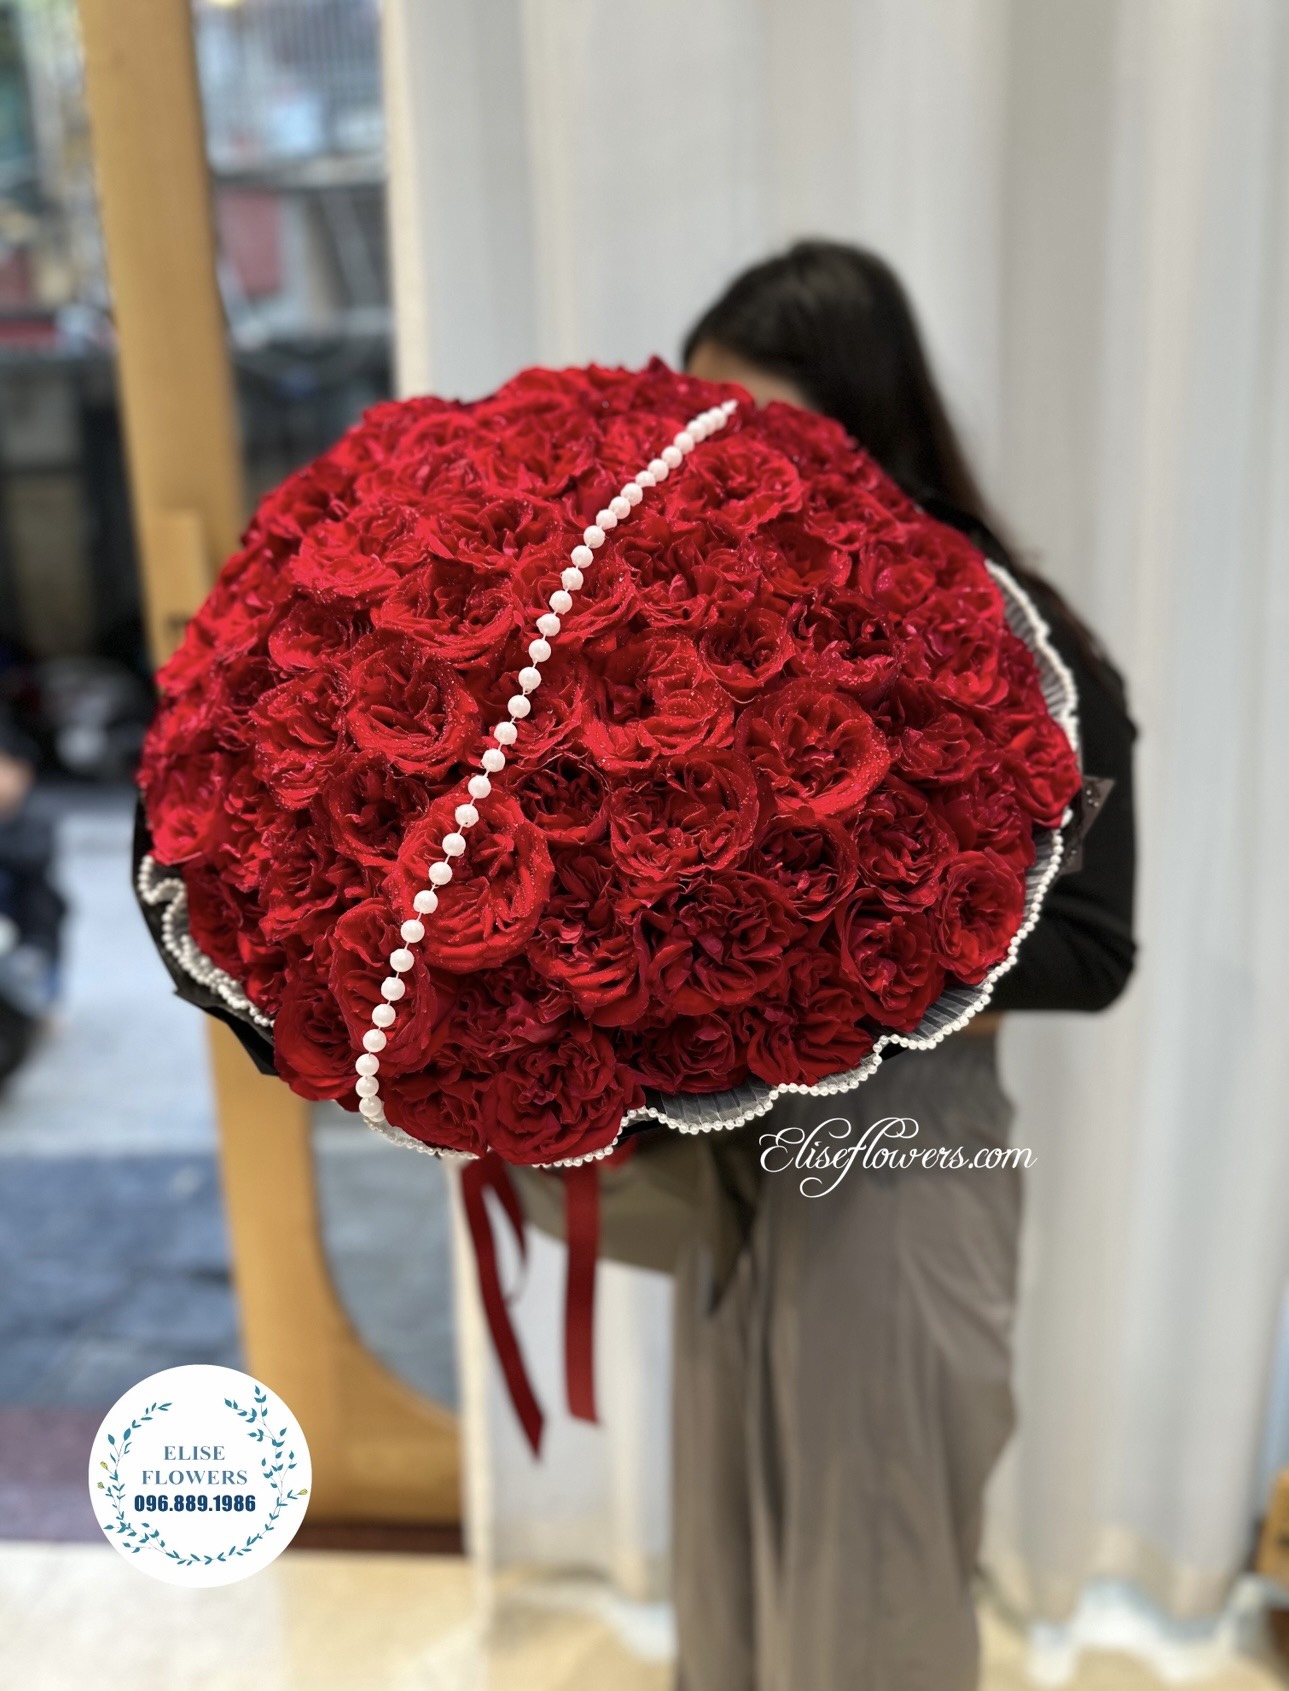 Bó hoa hồng đỏ nhập khẩu 100 bông tại Hà Nội. Đặt mua bó hoa hồng đỏ nhập khẩu 100 bông tại Hà Nội. 